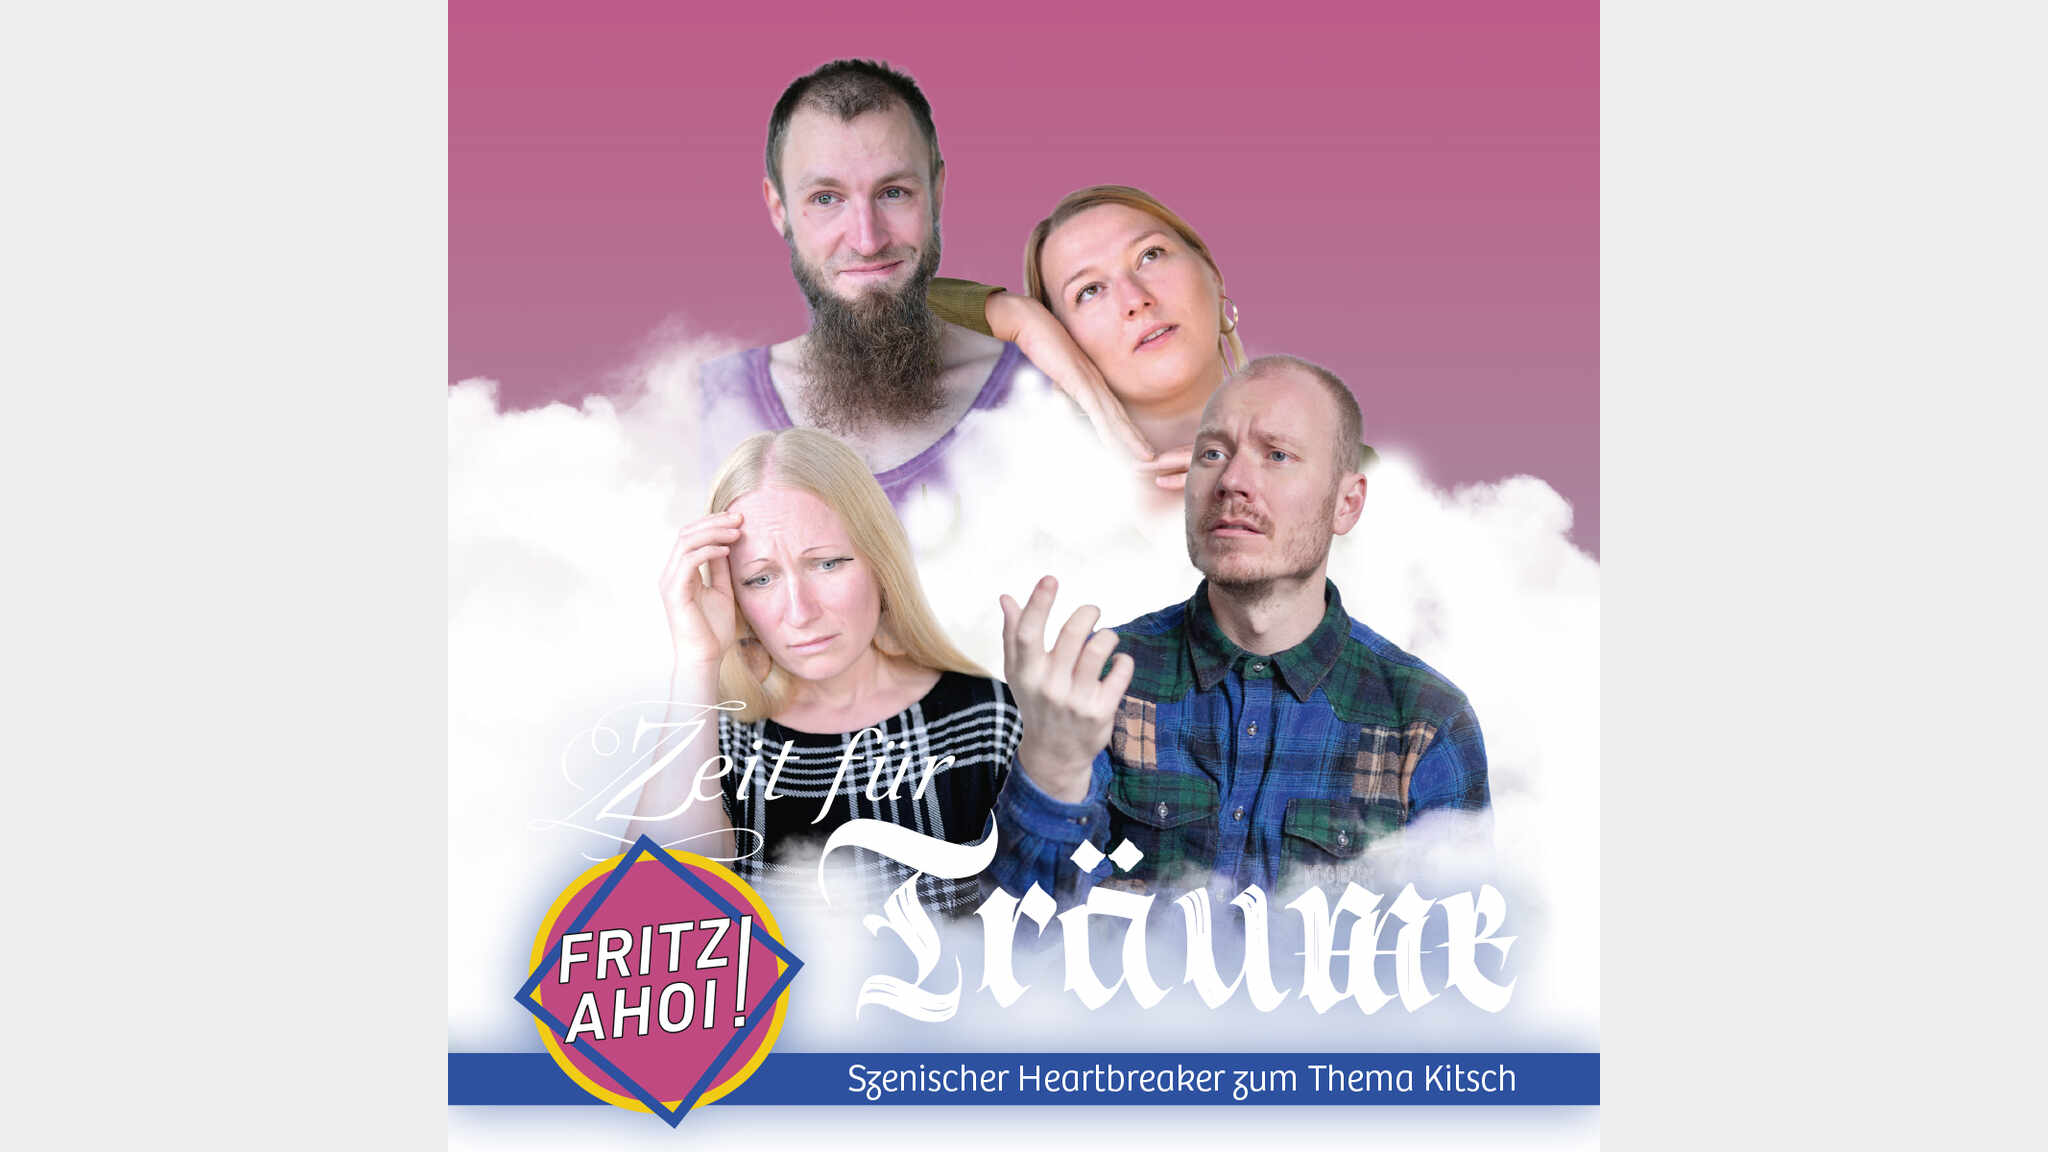 Zeit für Träume - Scenic Heartbreaker about Kitsch